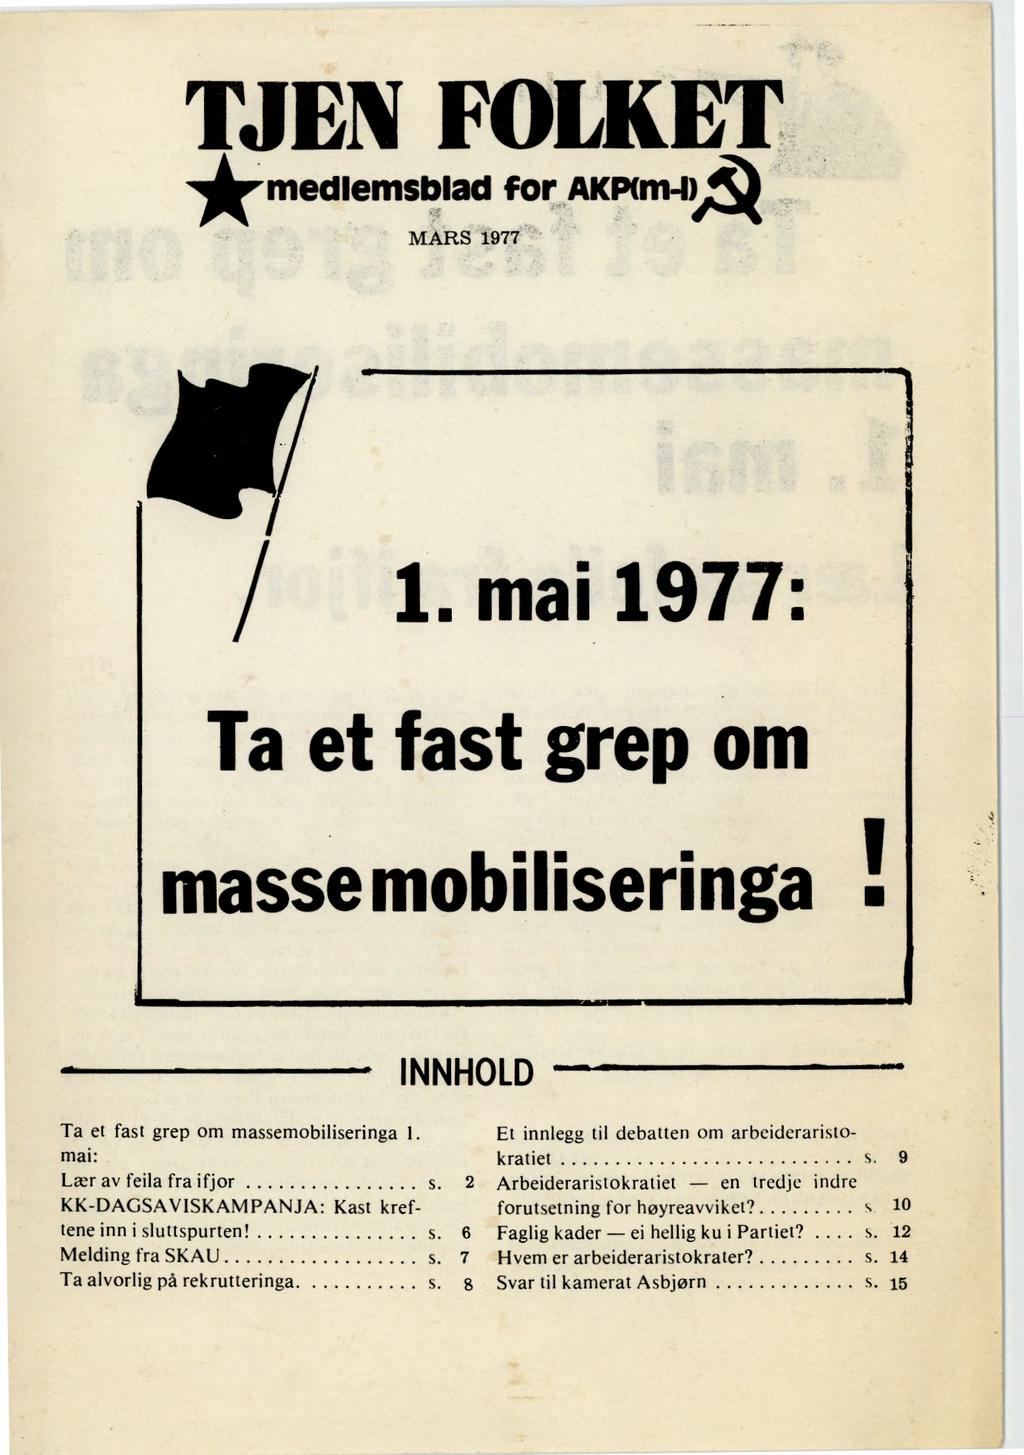 TJEN FOLKET medlemsblad for AKINm-IA MARS 1977 alt/ I / 1. mai 1977: Ta et fast grep om masse mobiliseringa - INNHOLD Ta et fast grep om massemobiliseringa 1.